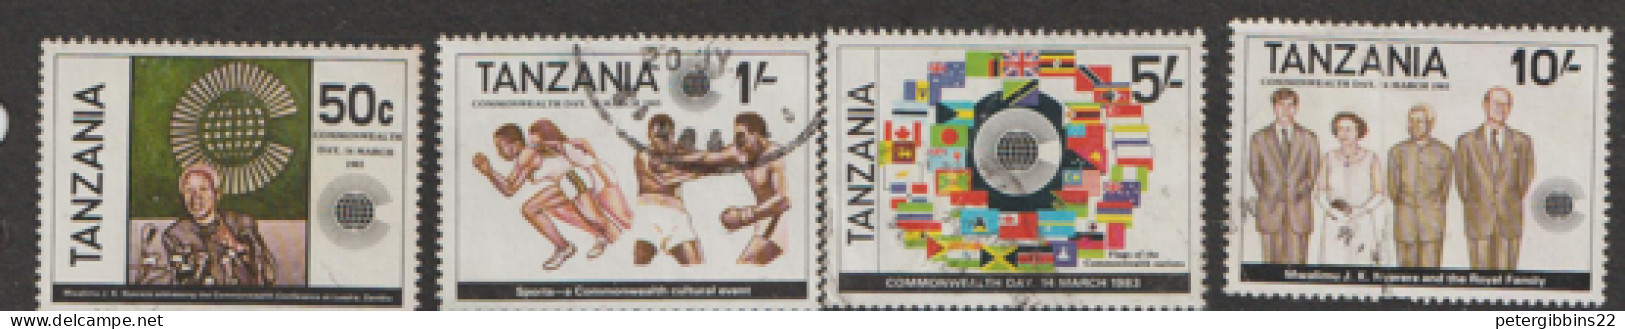 Tanzania   1982   SG 375-8   Commonwealth Day   Fine Used - Tanzania (1964-...)